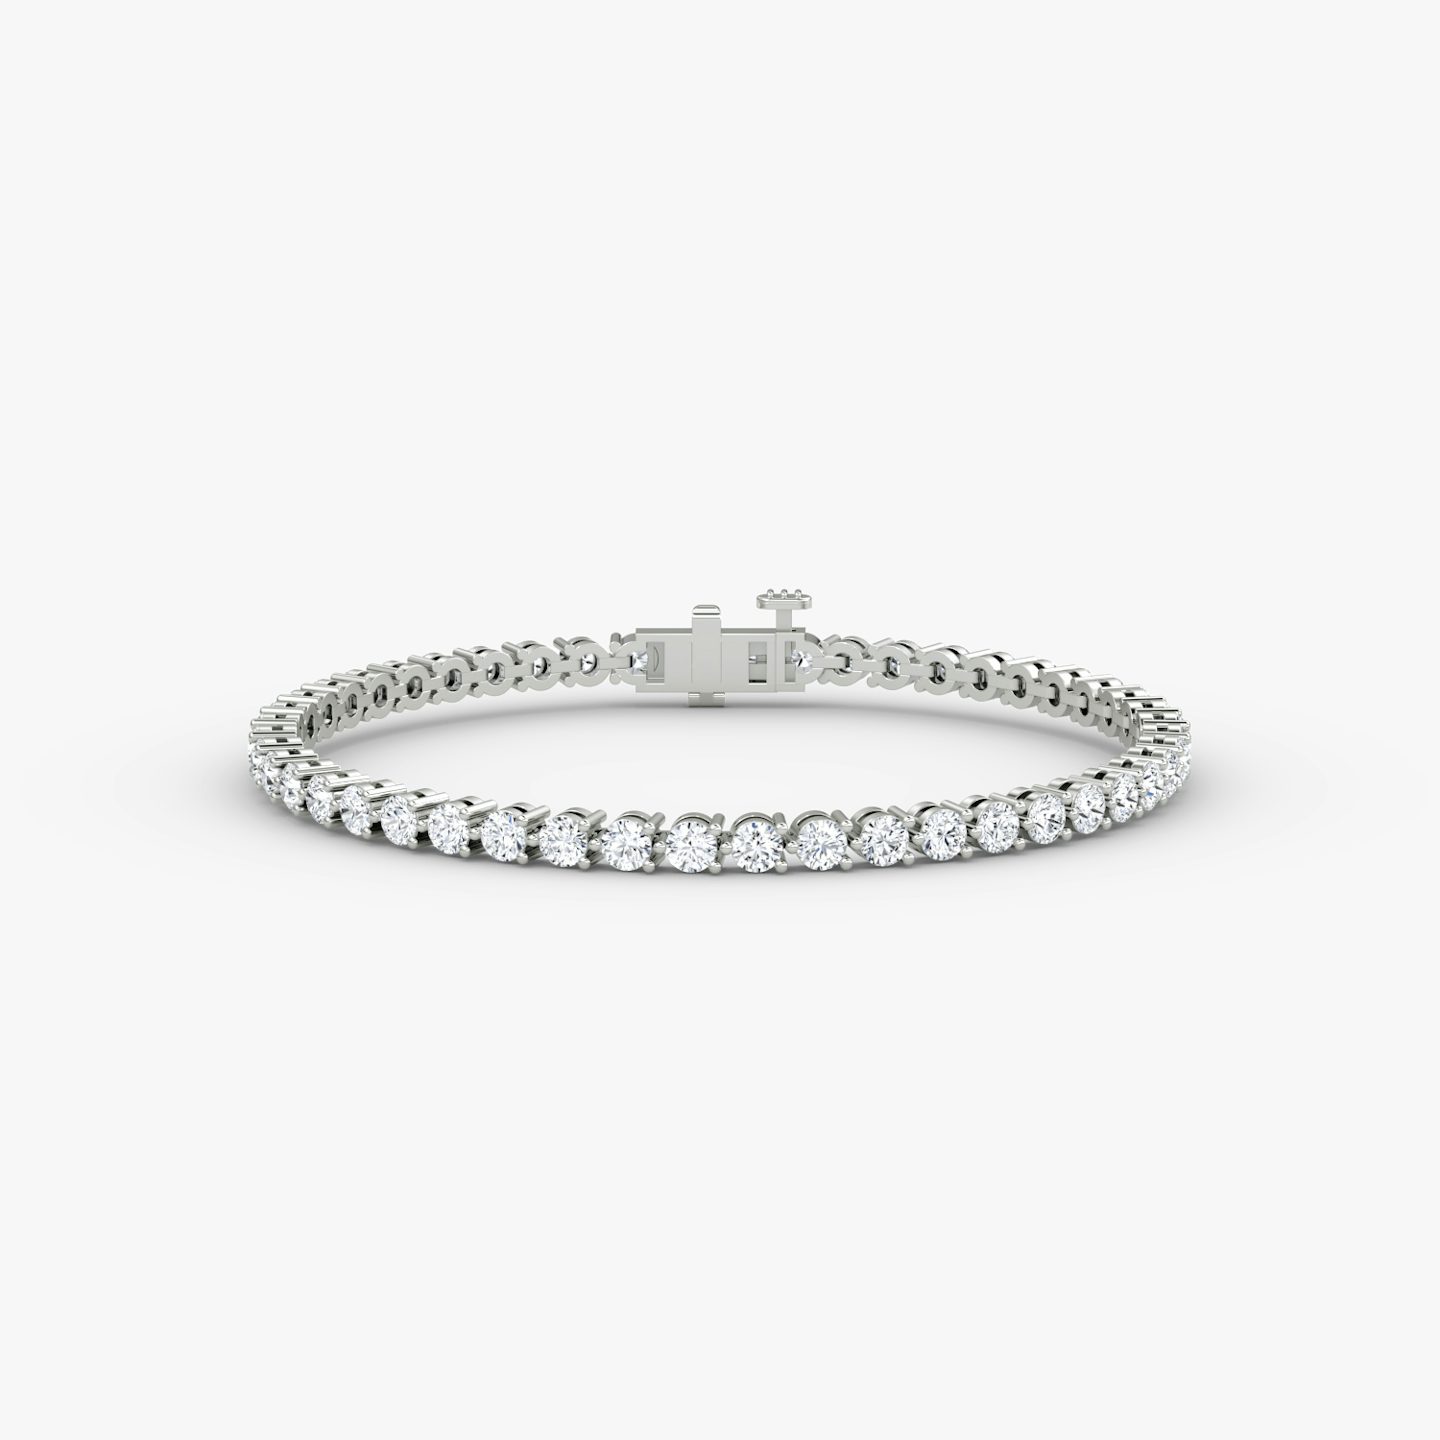 Bracelet Tennis | Rond Brillant | 14k | Or blanc 18 carats | Taille des diamants: Medium | Longueur de la chaîne: 5.5